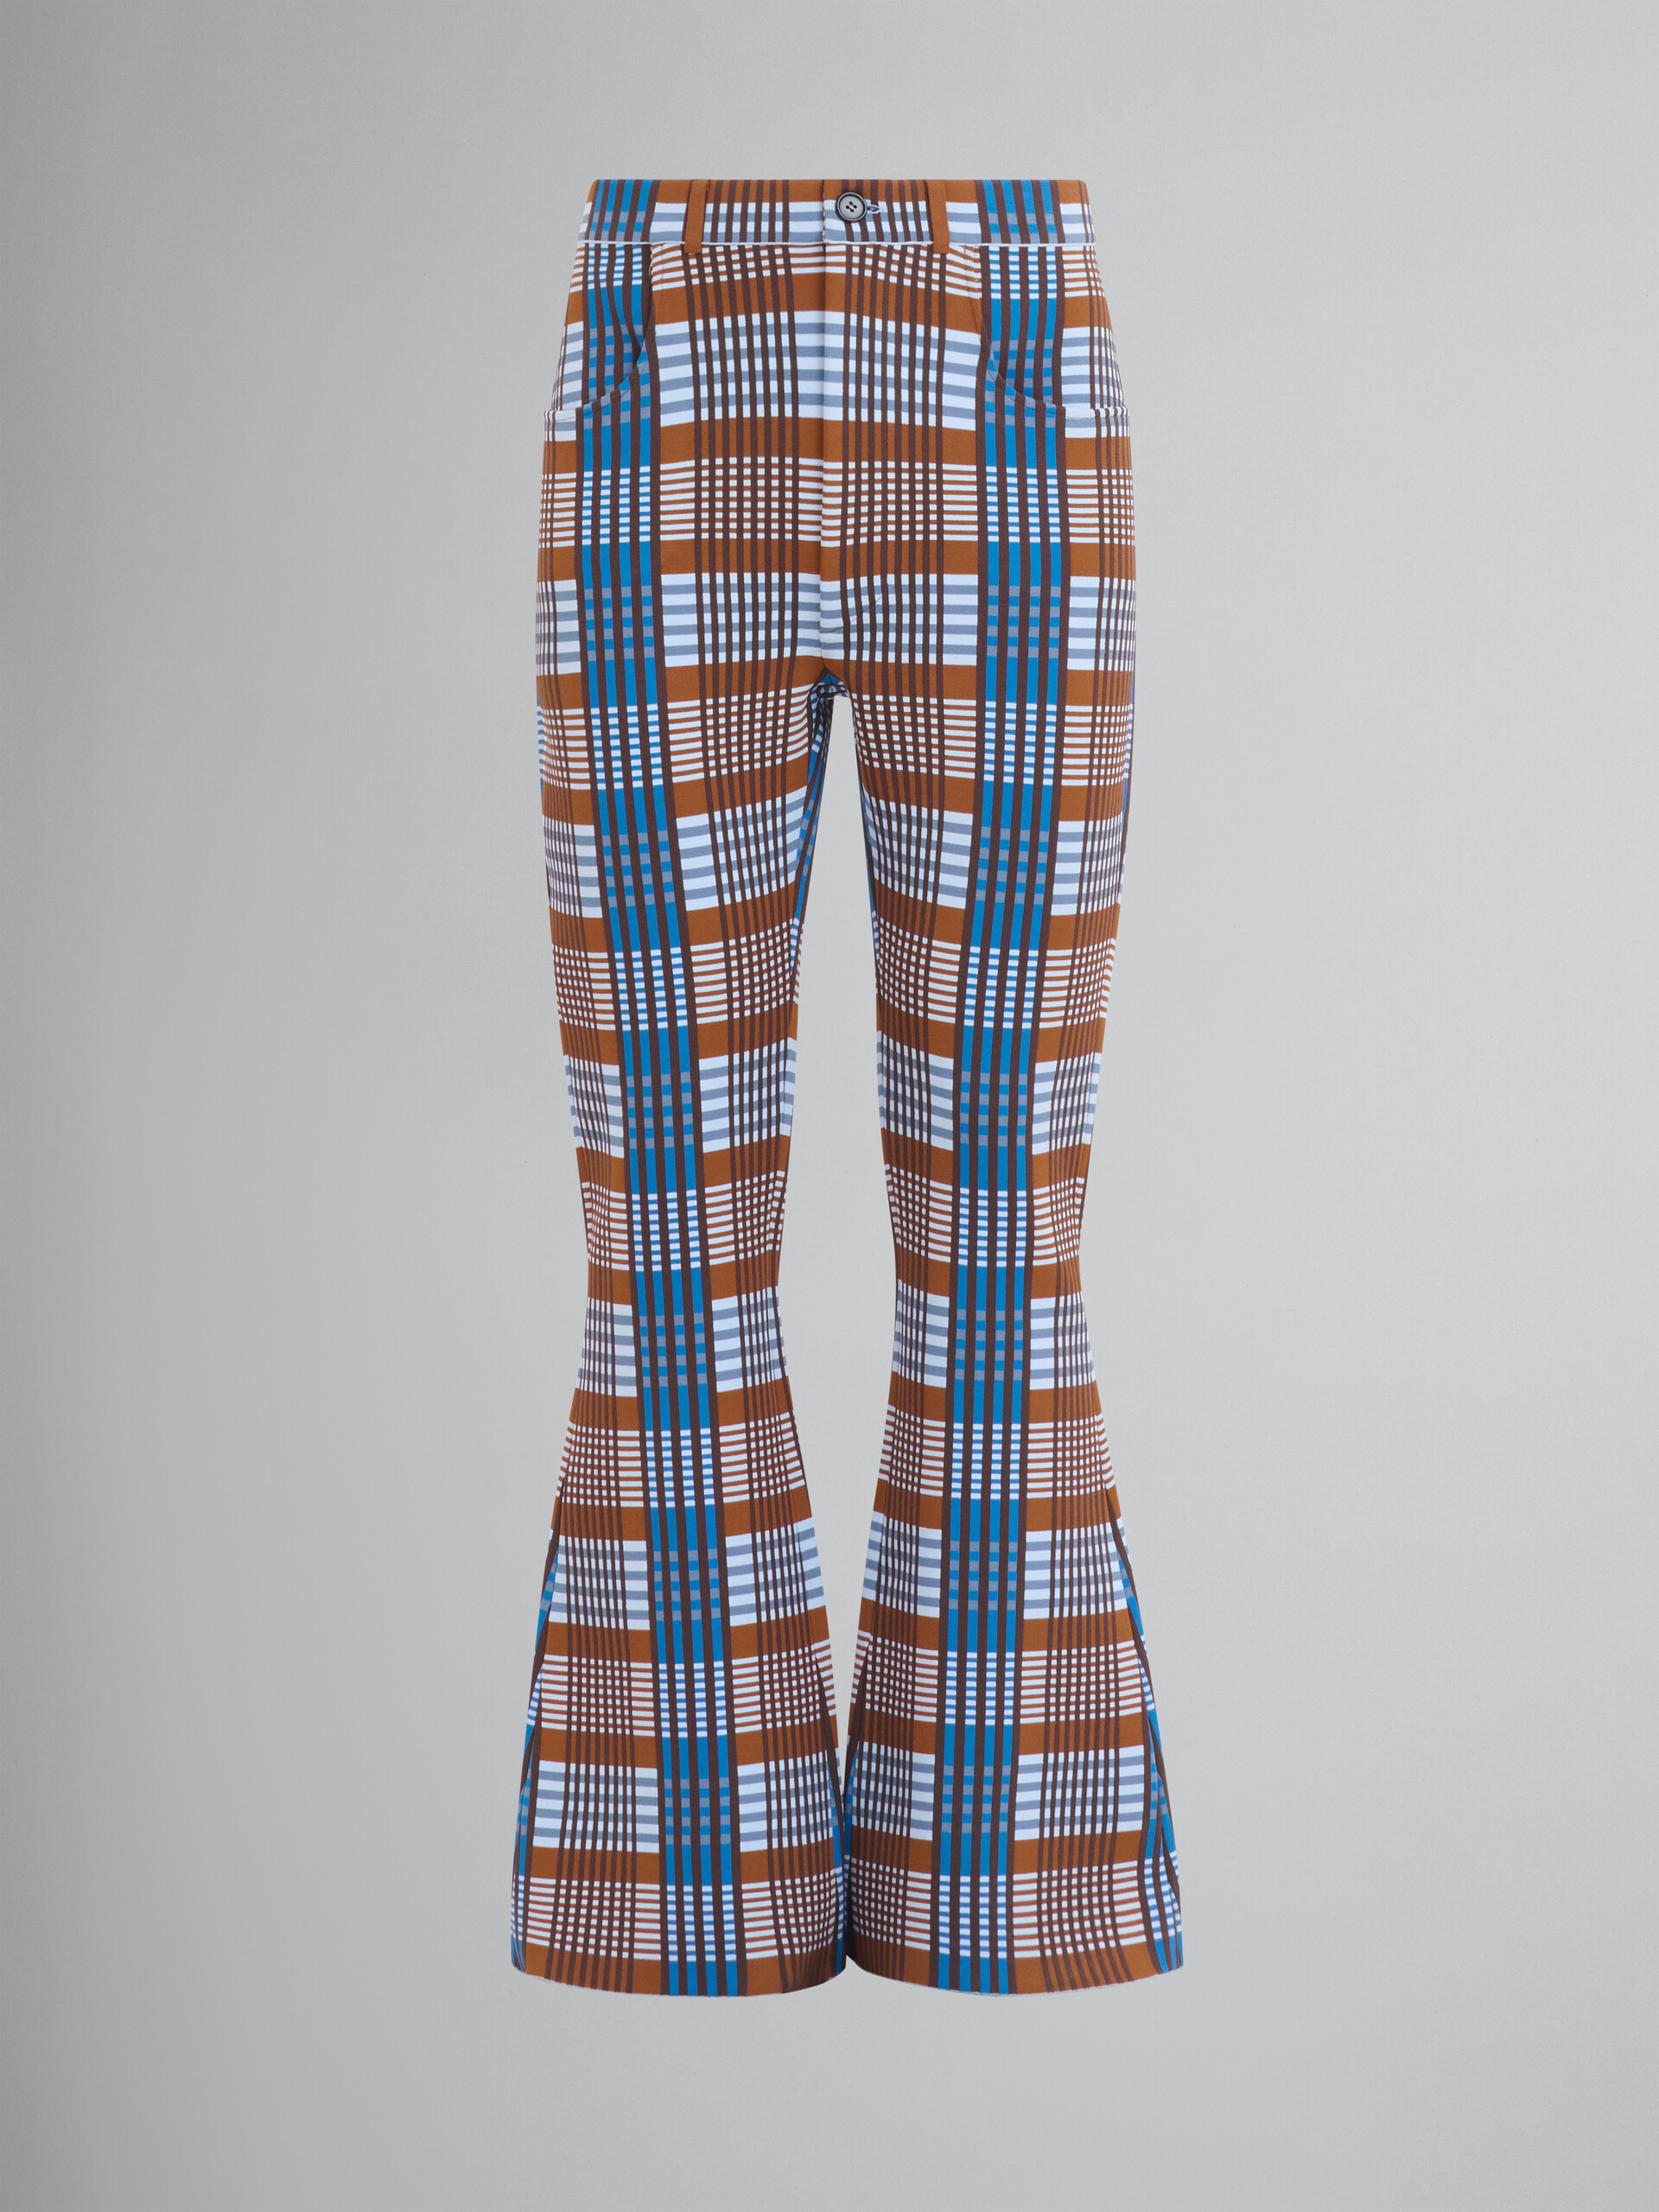 Pantaloni in maglia tecnica a quadri blu e marrone - Pantaloni - Image 1